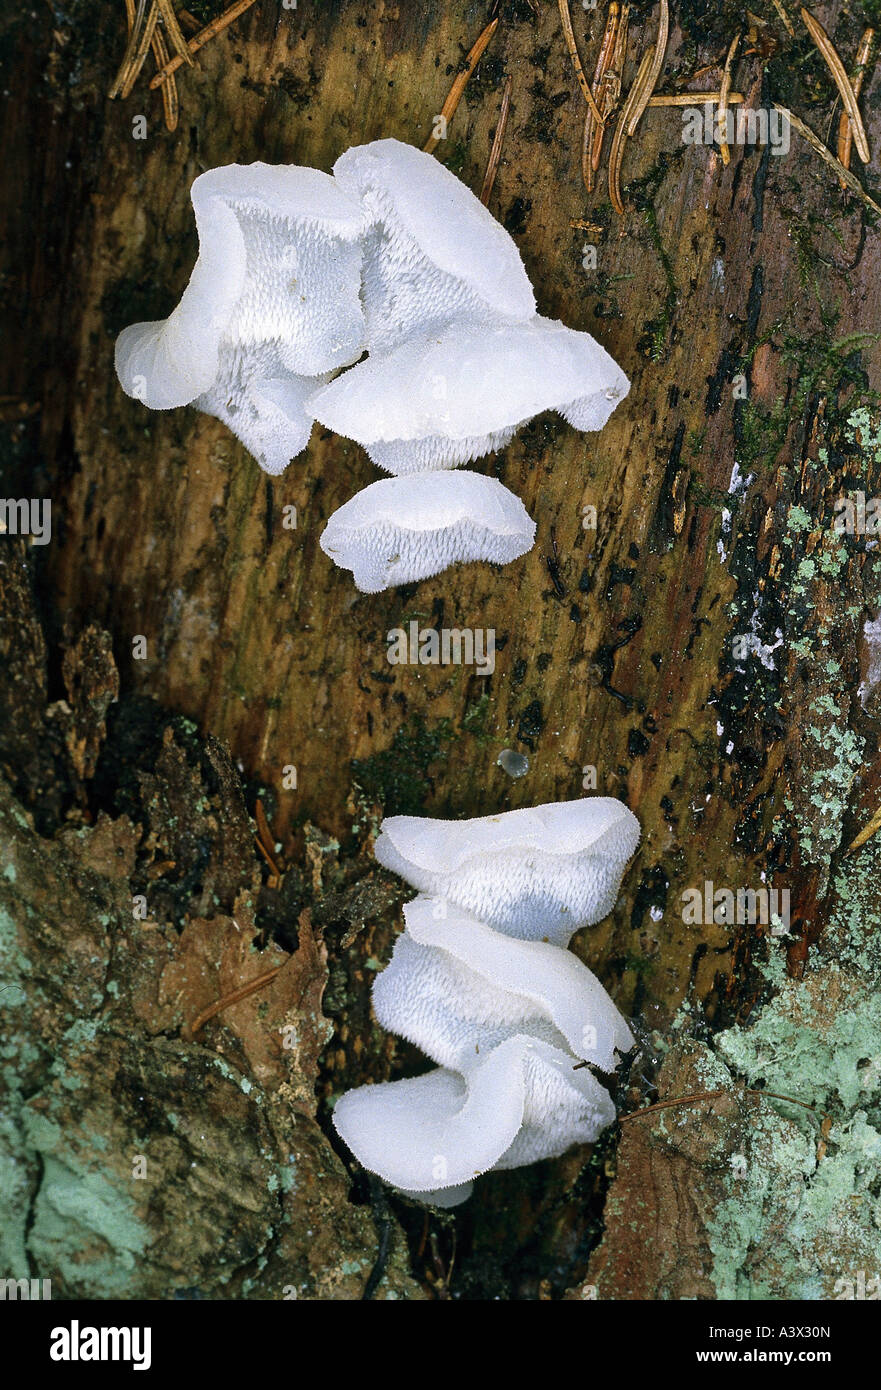 botany, fungi, Tremella, Tremellodon gelatinosum, at tree trunk, eatable, Pseudohydnum gelatinosum, toothed jelly fungus, false Stock Photo